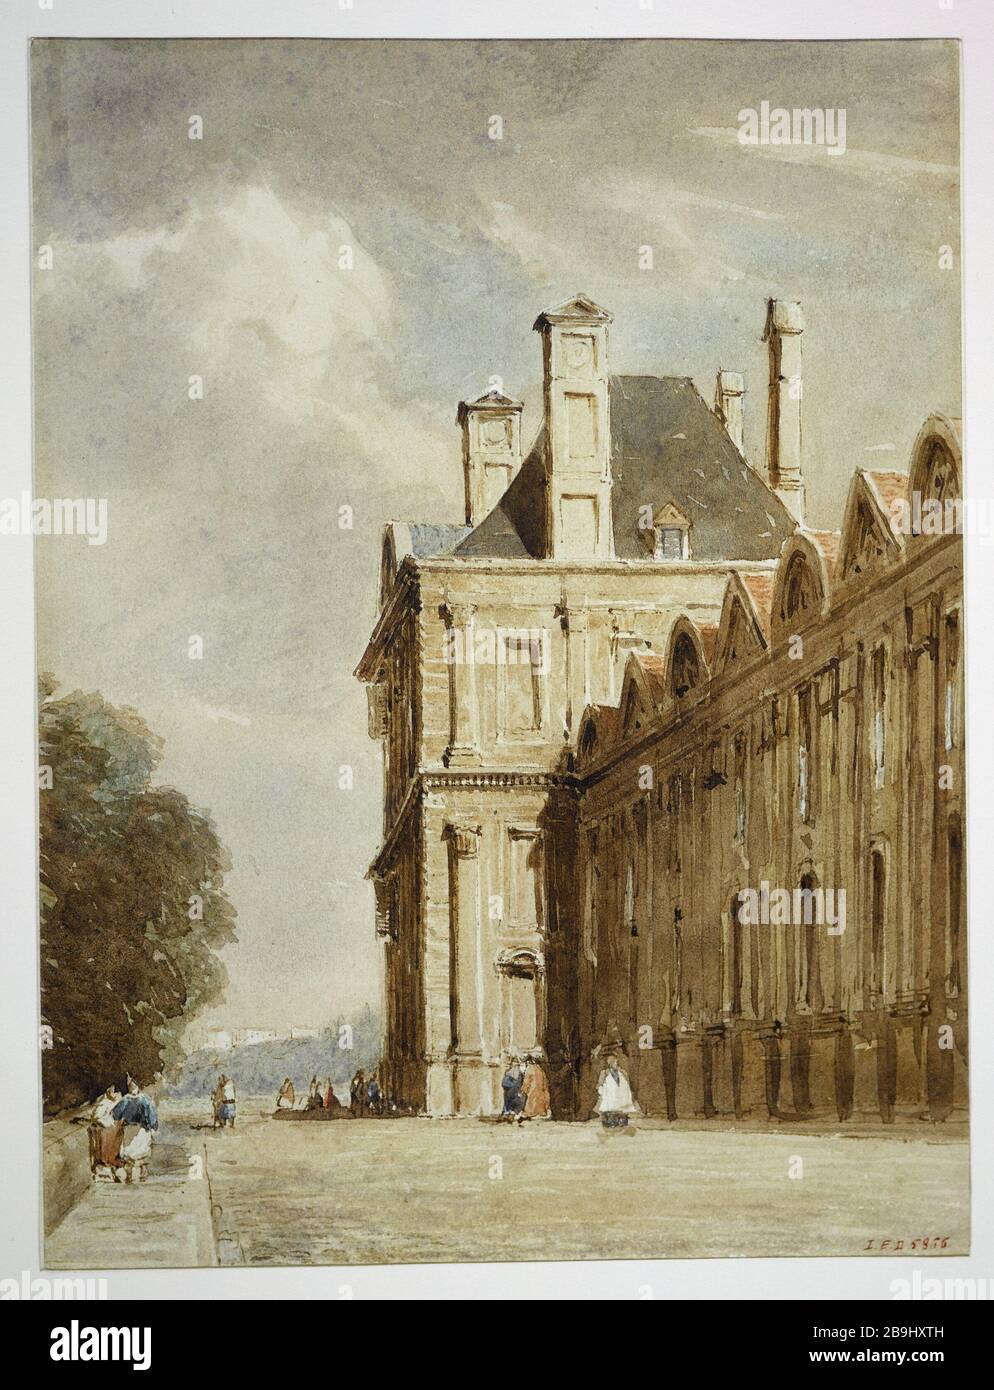 PAVILION FLORA Thomas Shotter Boys (1803-1874). 'Le pavillon de Flore vers 1835'. Dessin. Paris, musée Carnavalet. Stock Photo